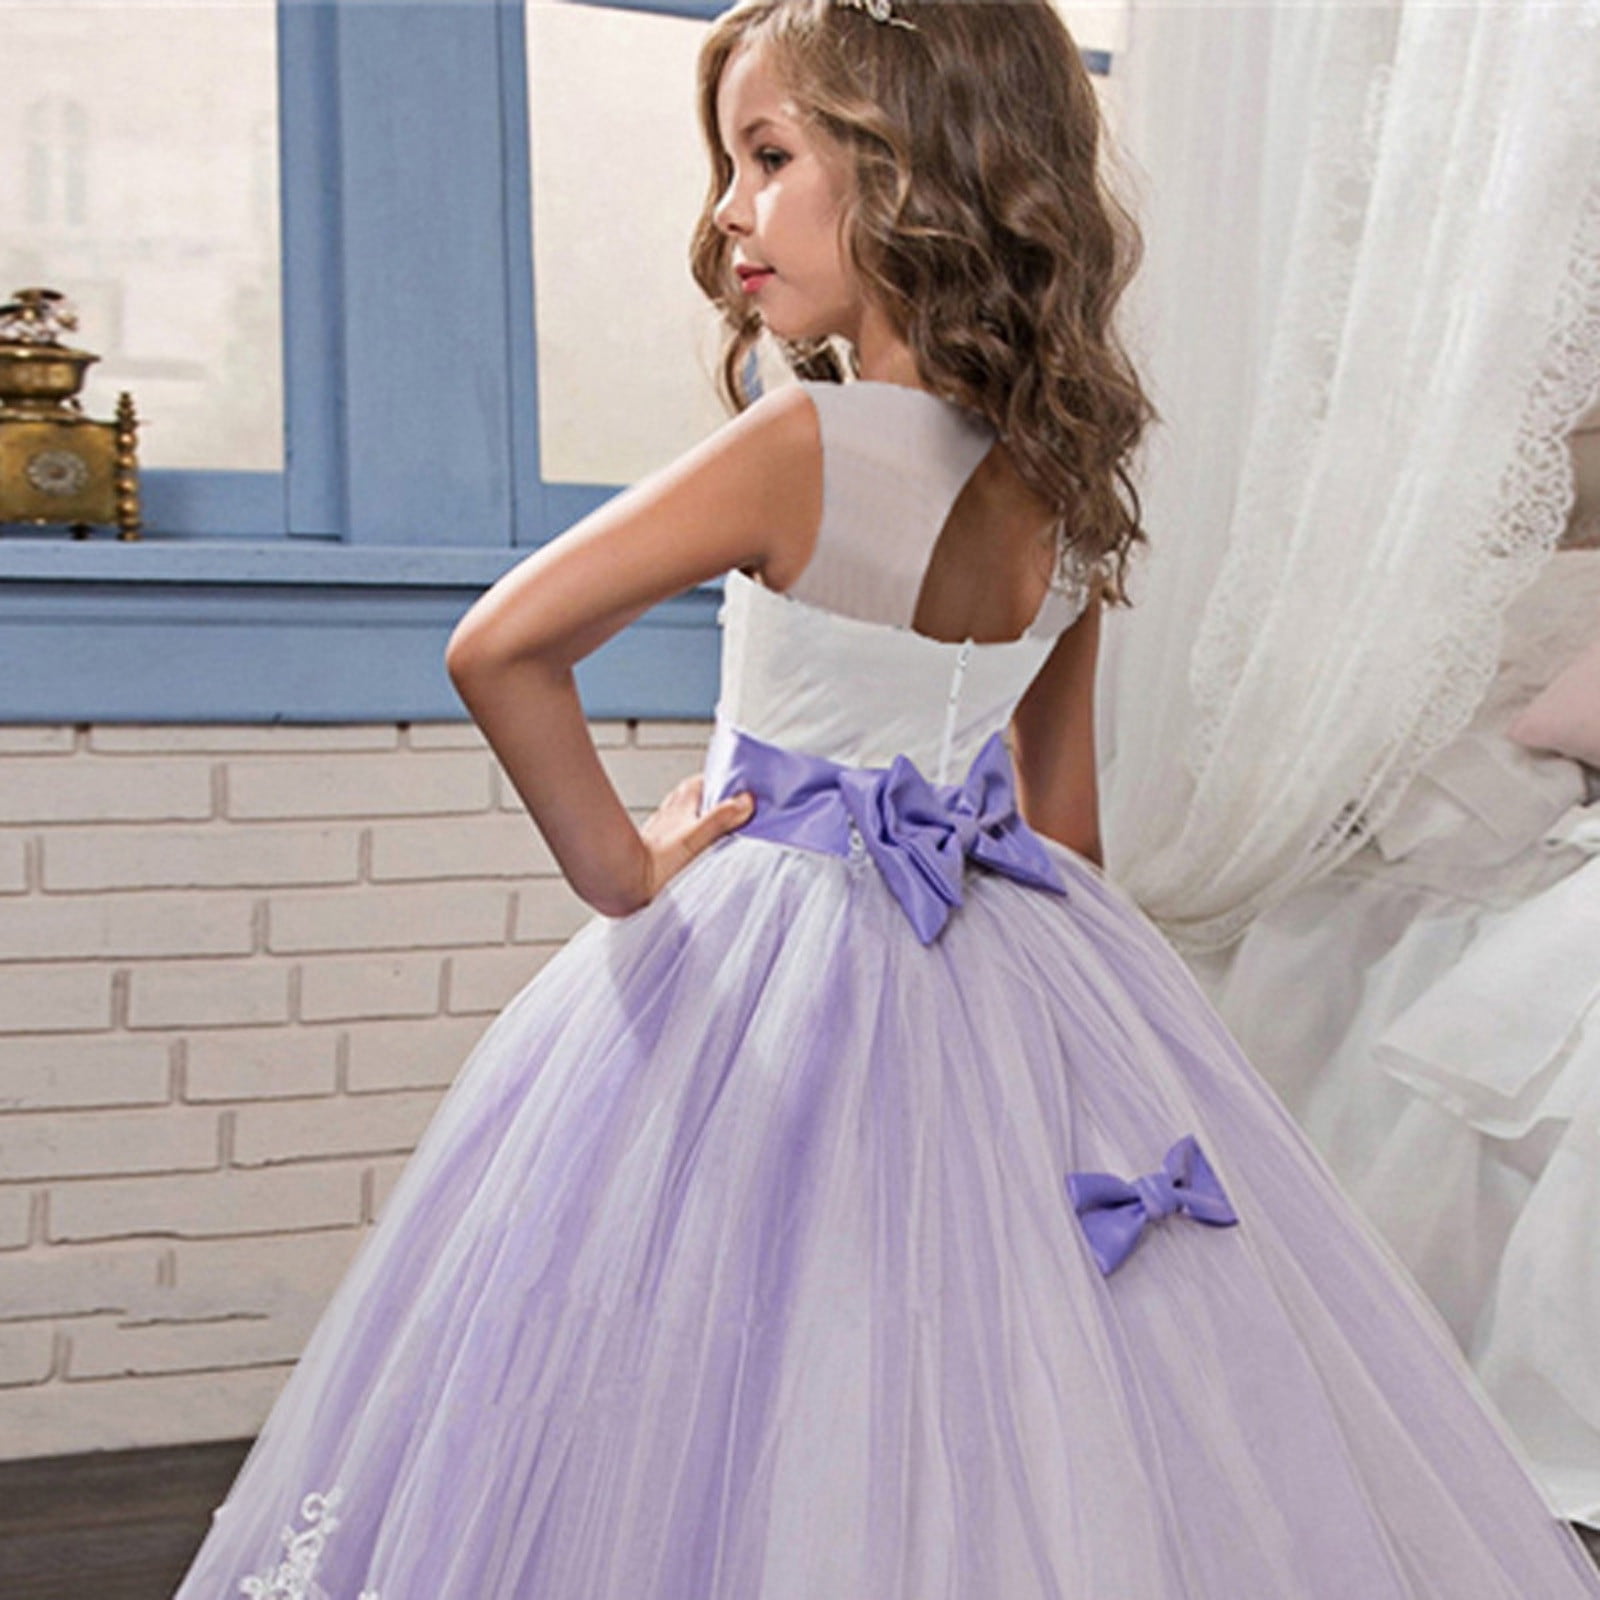 purple flower dress